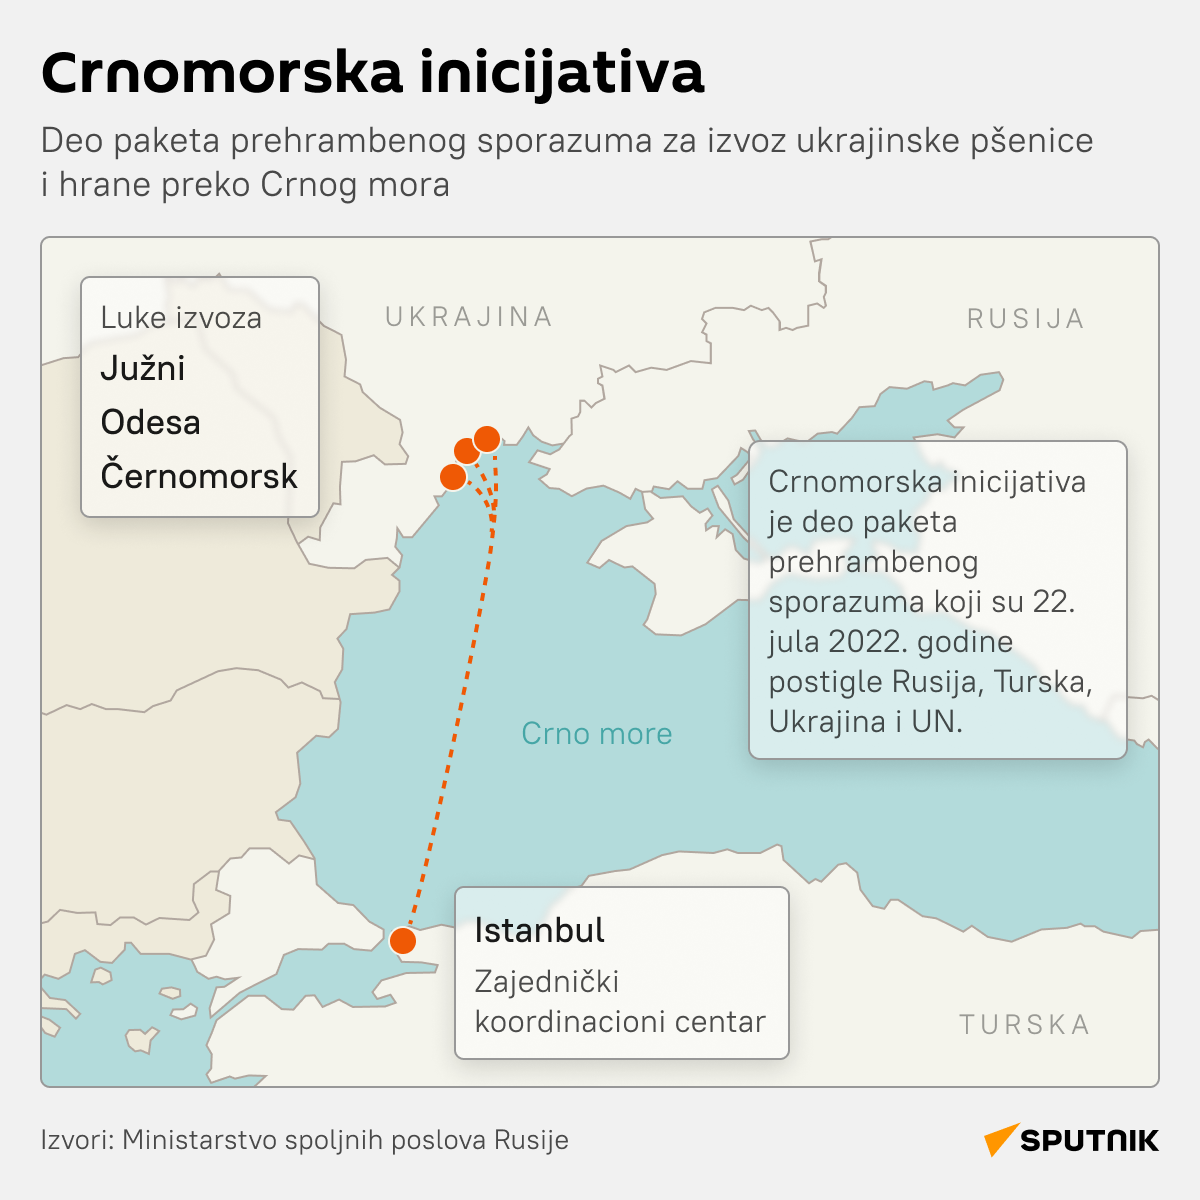 Crnomorska inicijativa LATINICA desk - Sputnik Srbija